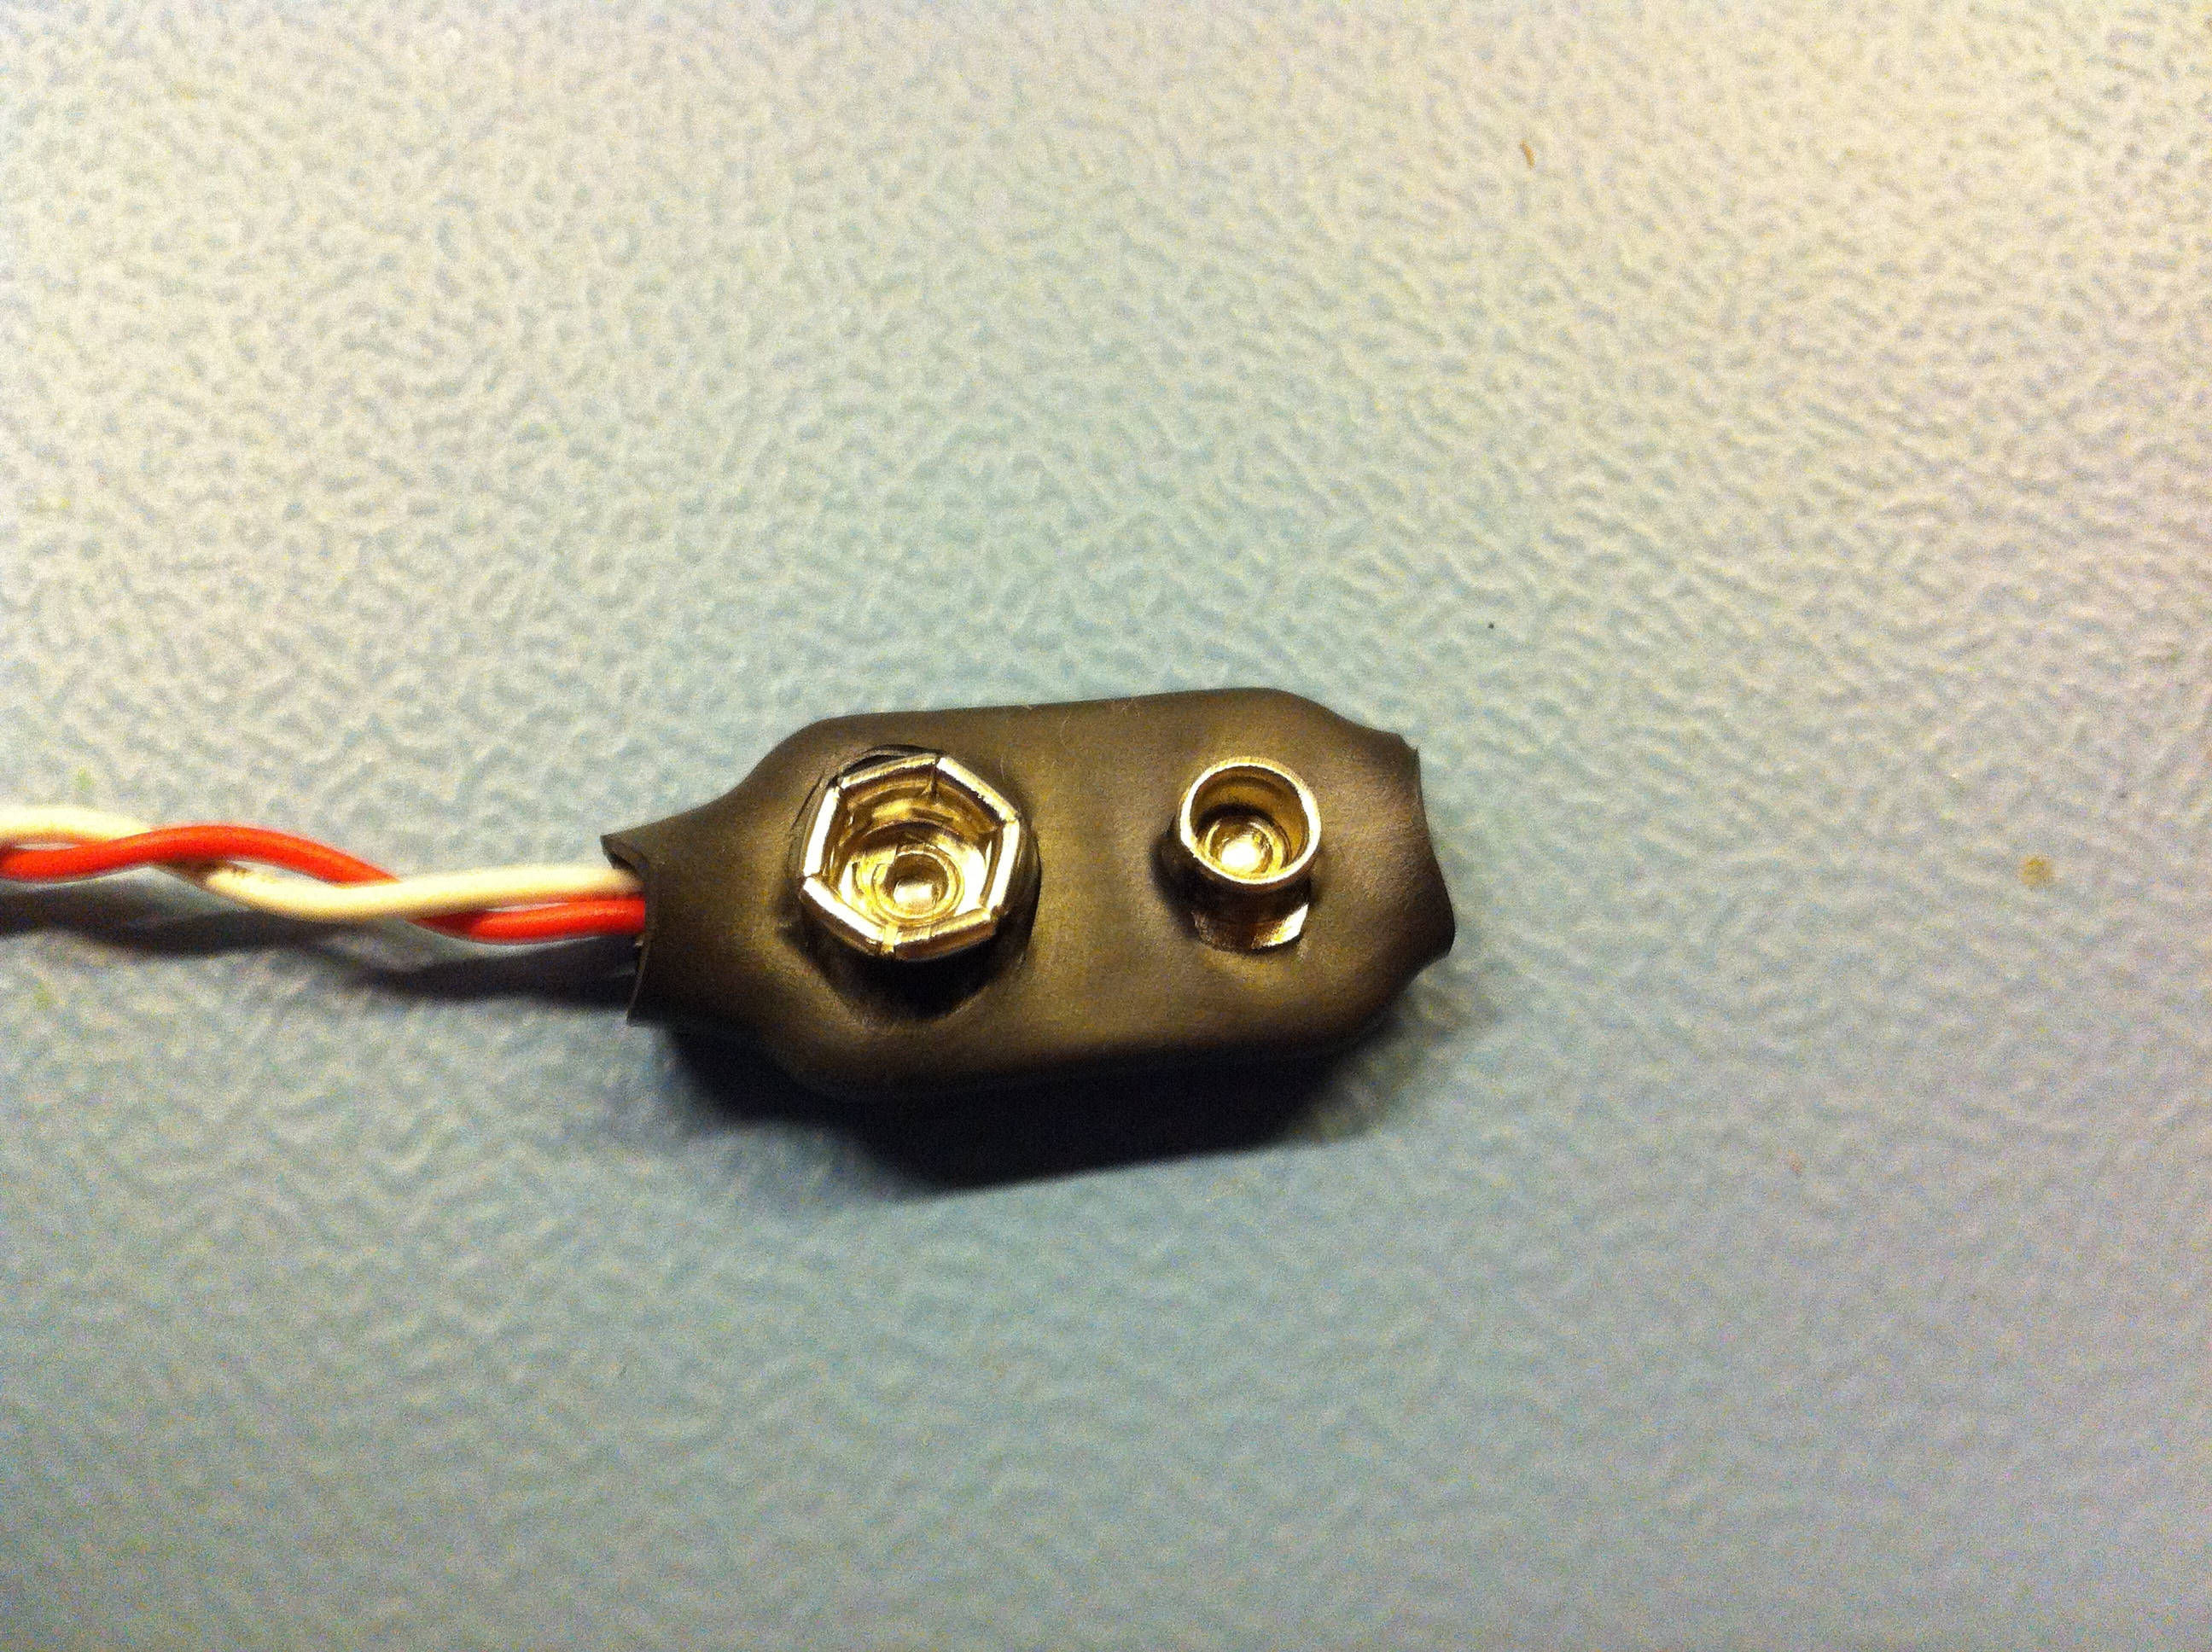 broken 1.5 volt battery clip